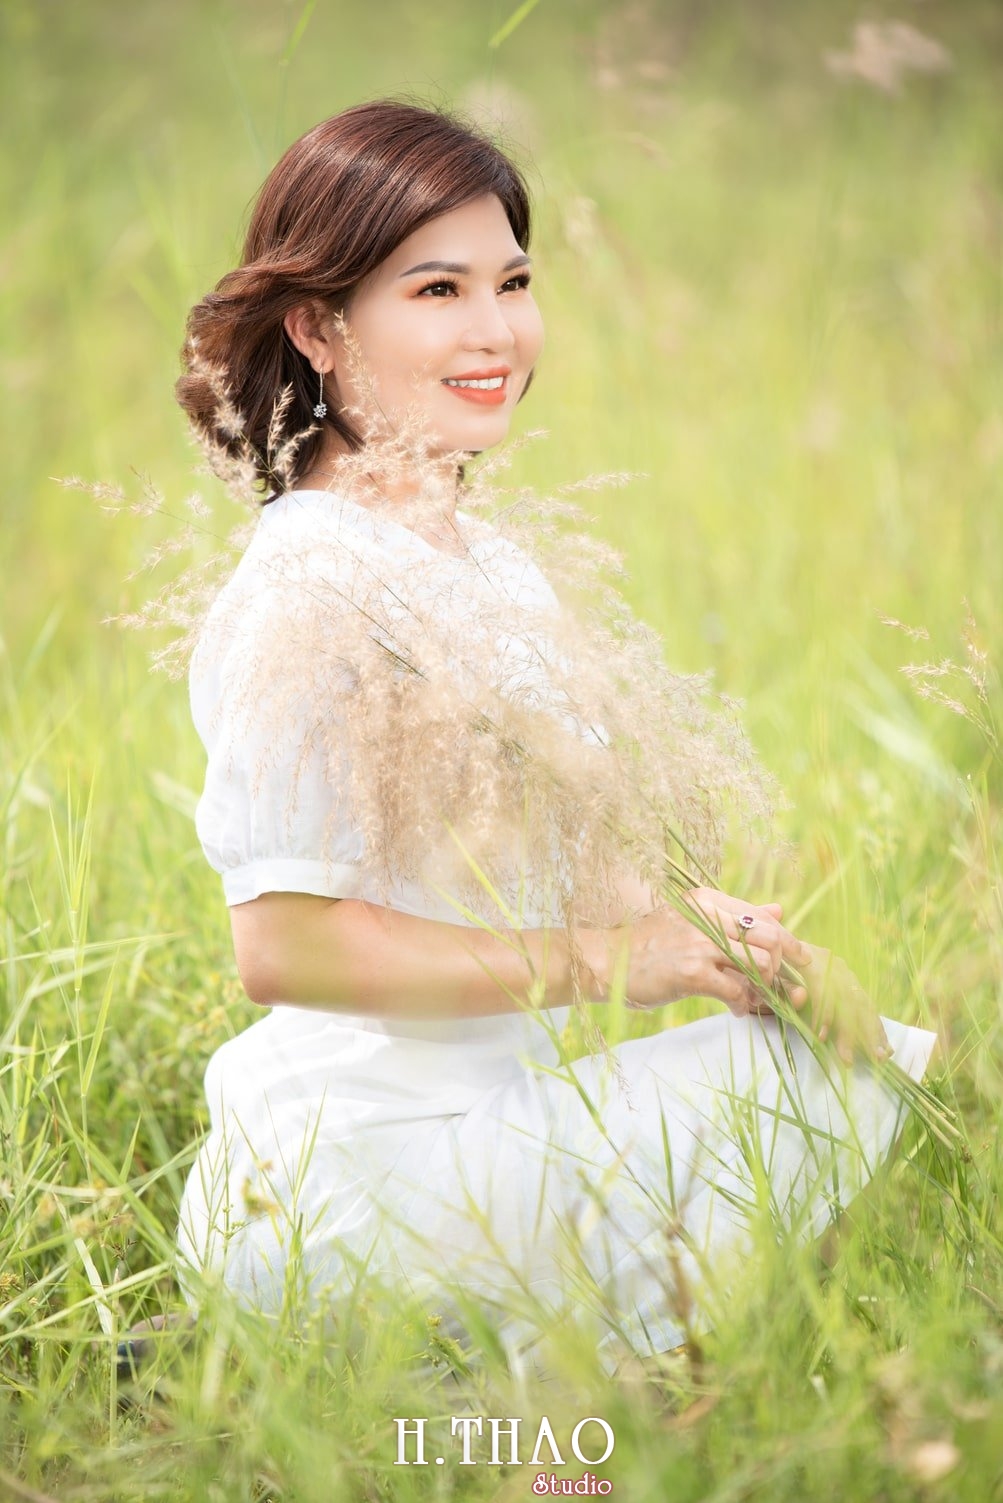 Canh Dong Co Lau 3 - Góc ảnh cỏ lau quận 2 tuyệt đẹp với nắng chiều - HThao Studio